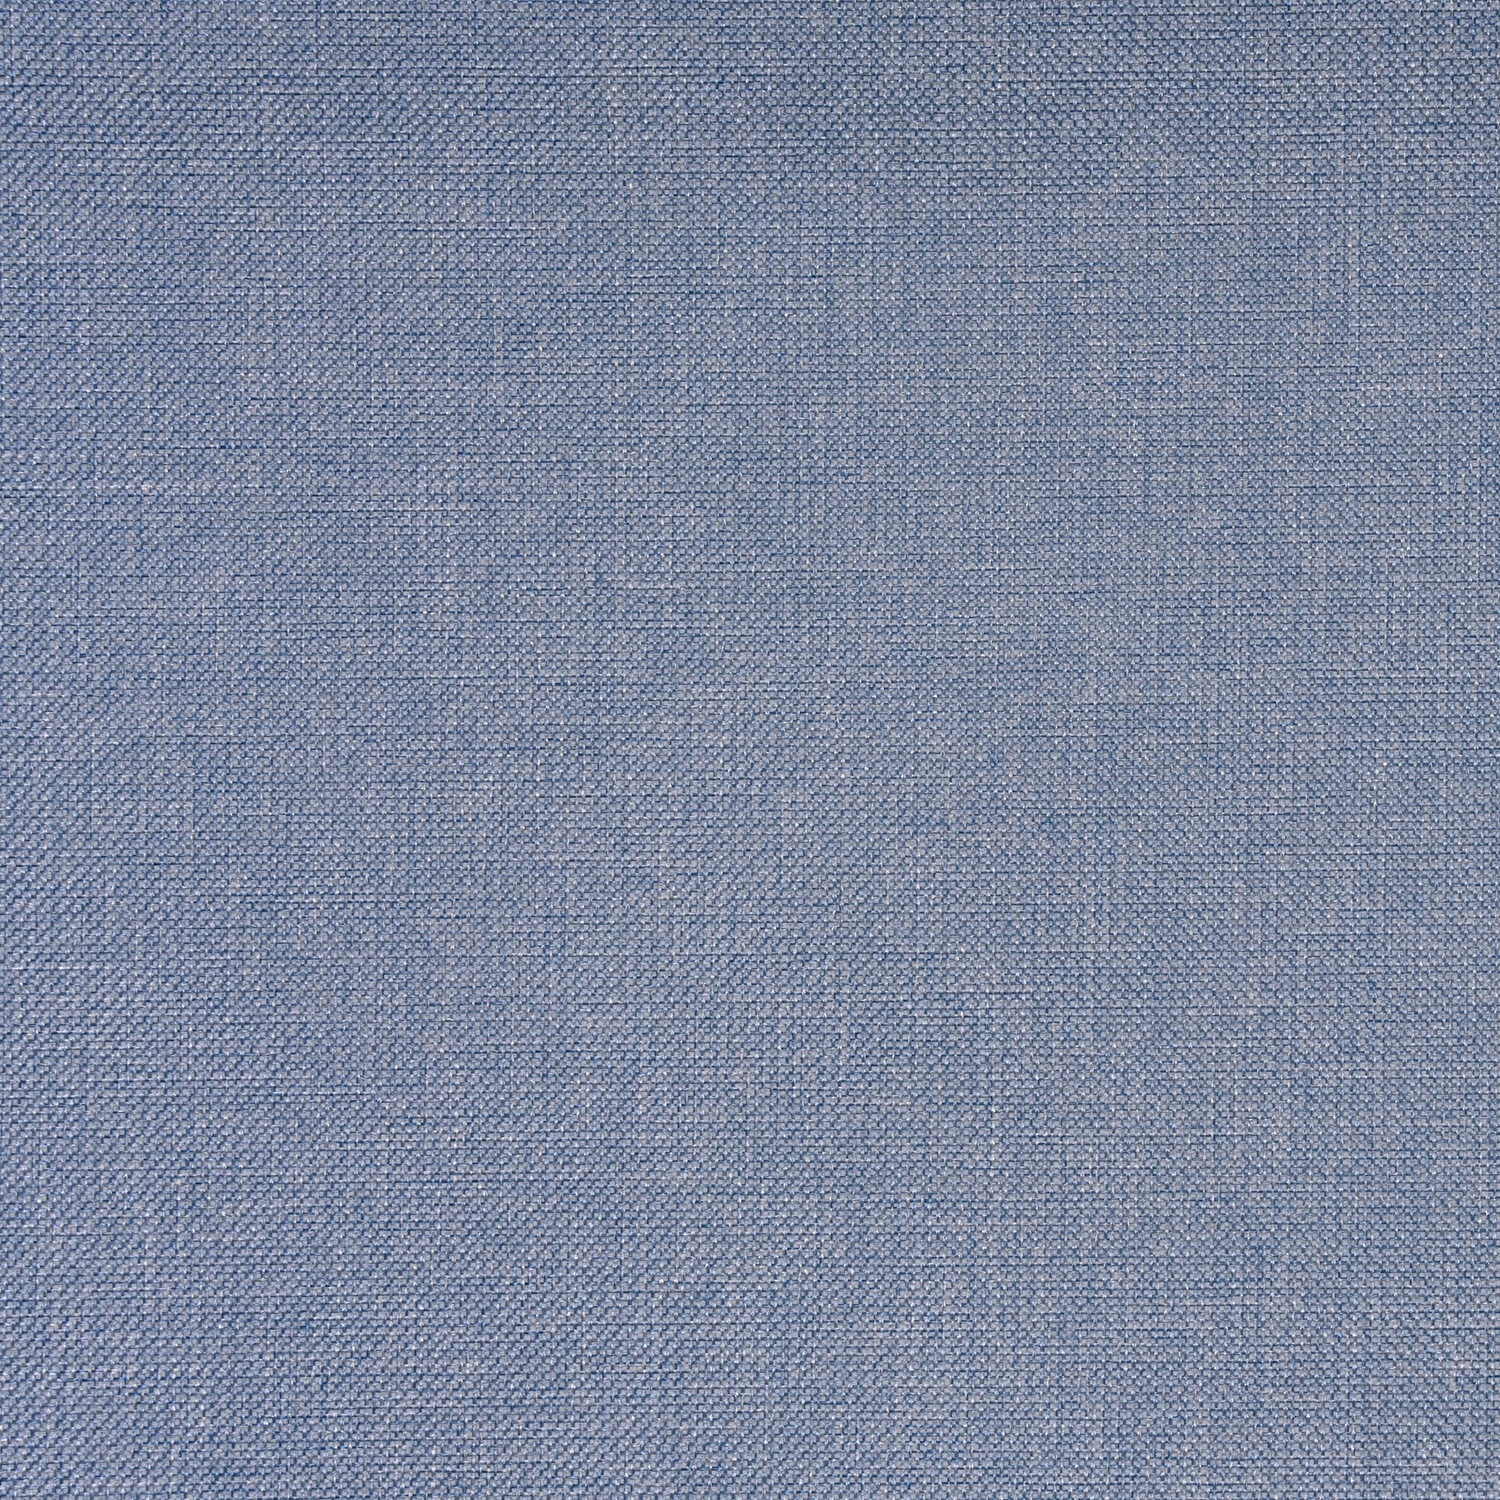 Textured Blackout Blinds - Denim Blue / 90cm Image 4